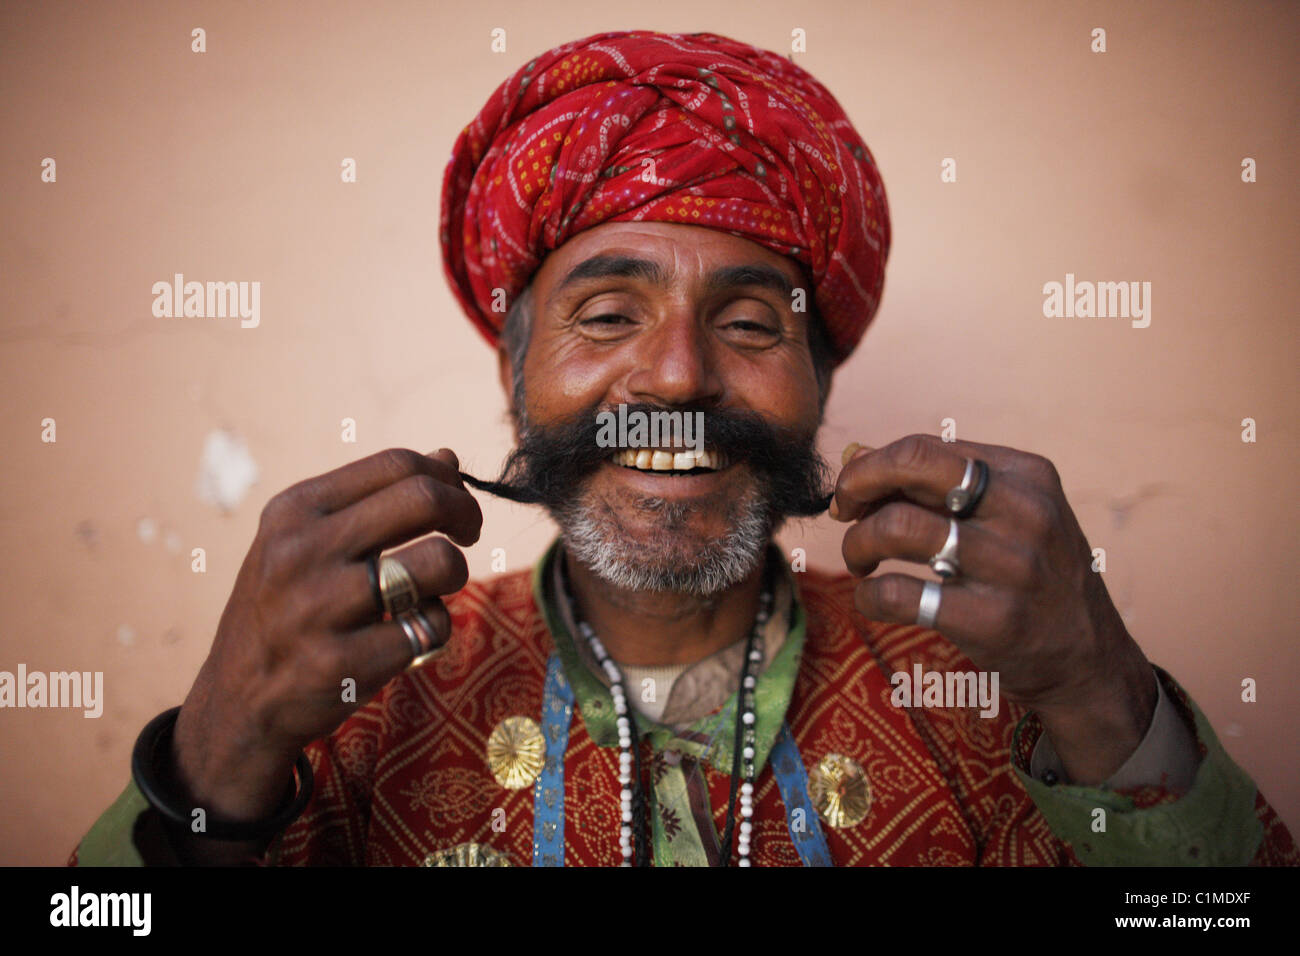 IND India,20110310, ritratto da un uomo indiano con una barba grigia, un turbante rosso con il costume tradizionale Foto Stock